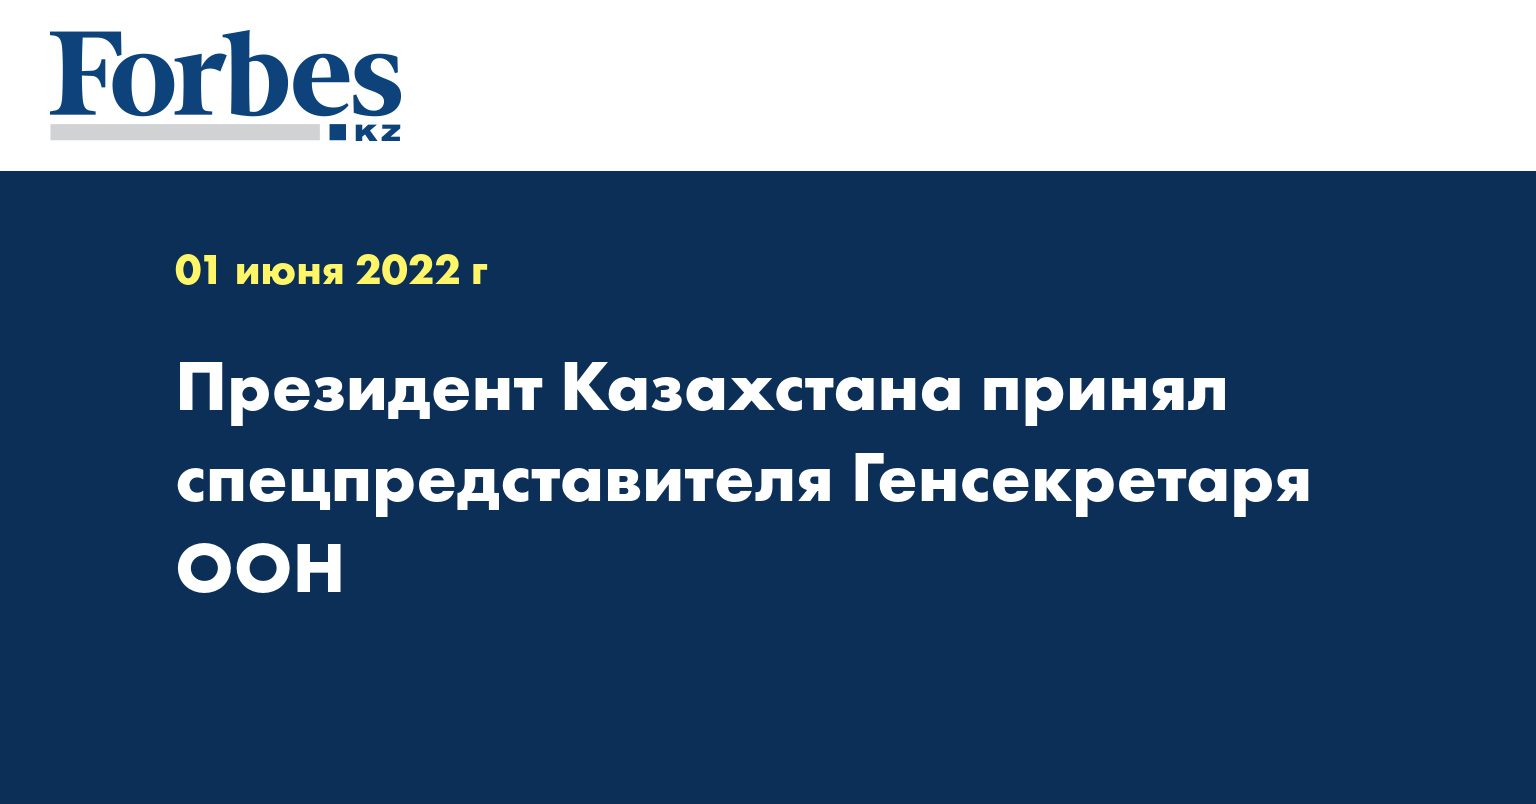 Президент Казахстана принял спецпредставителя Генсекретаря ООН